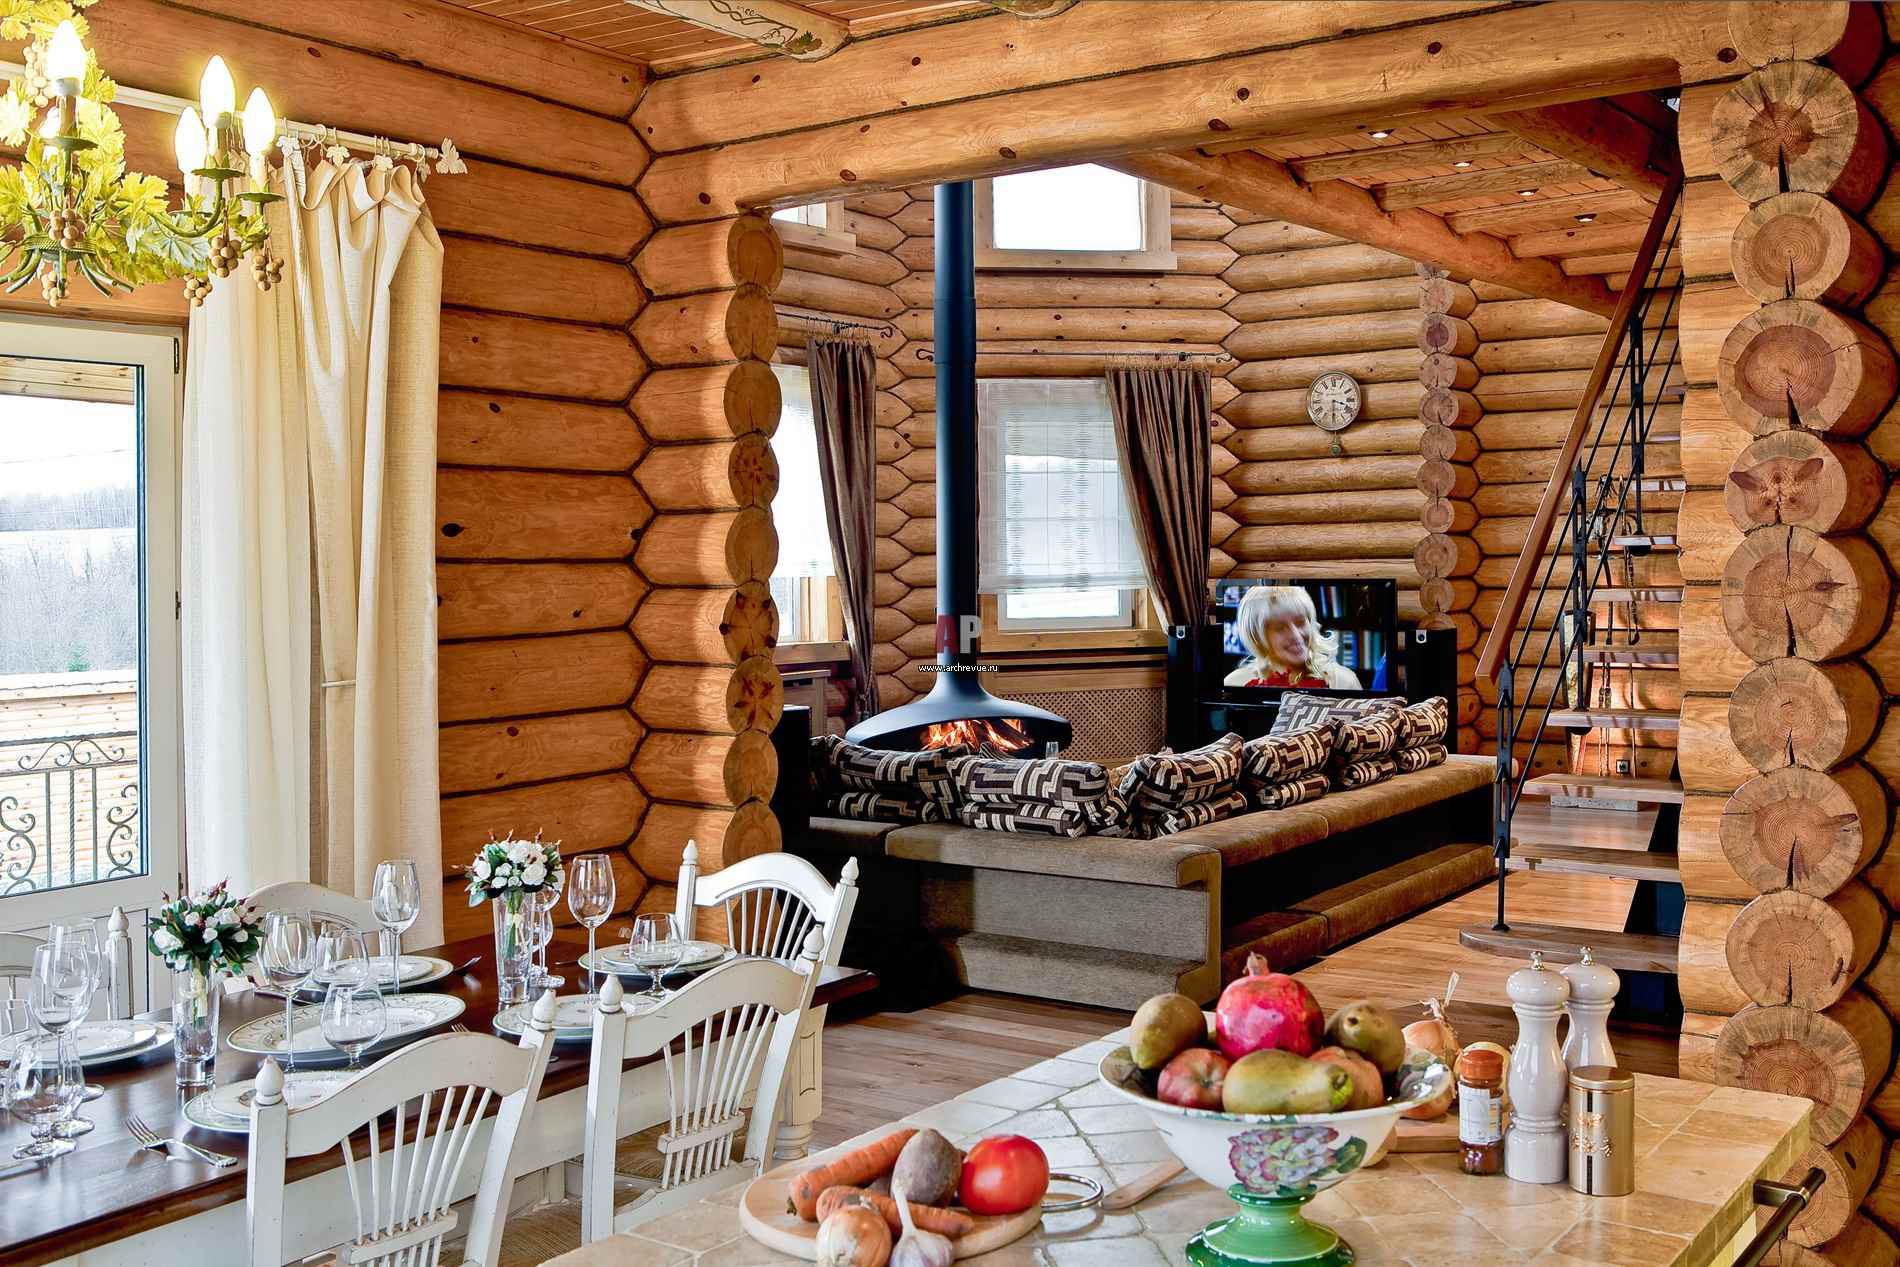 l'idea di un bel design della cucina in una casa di legno